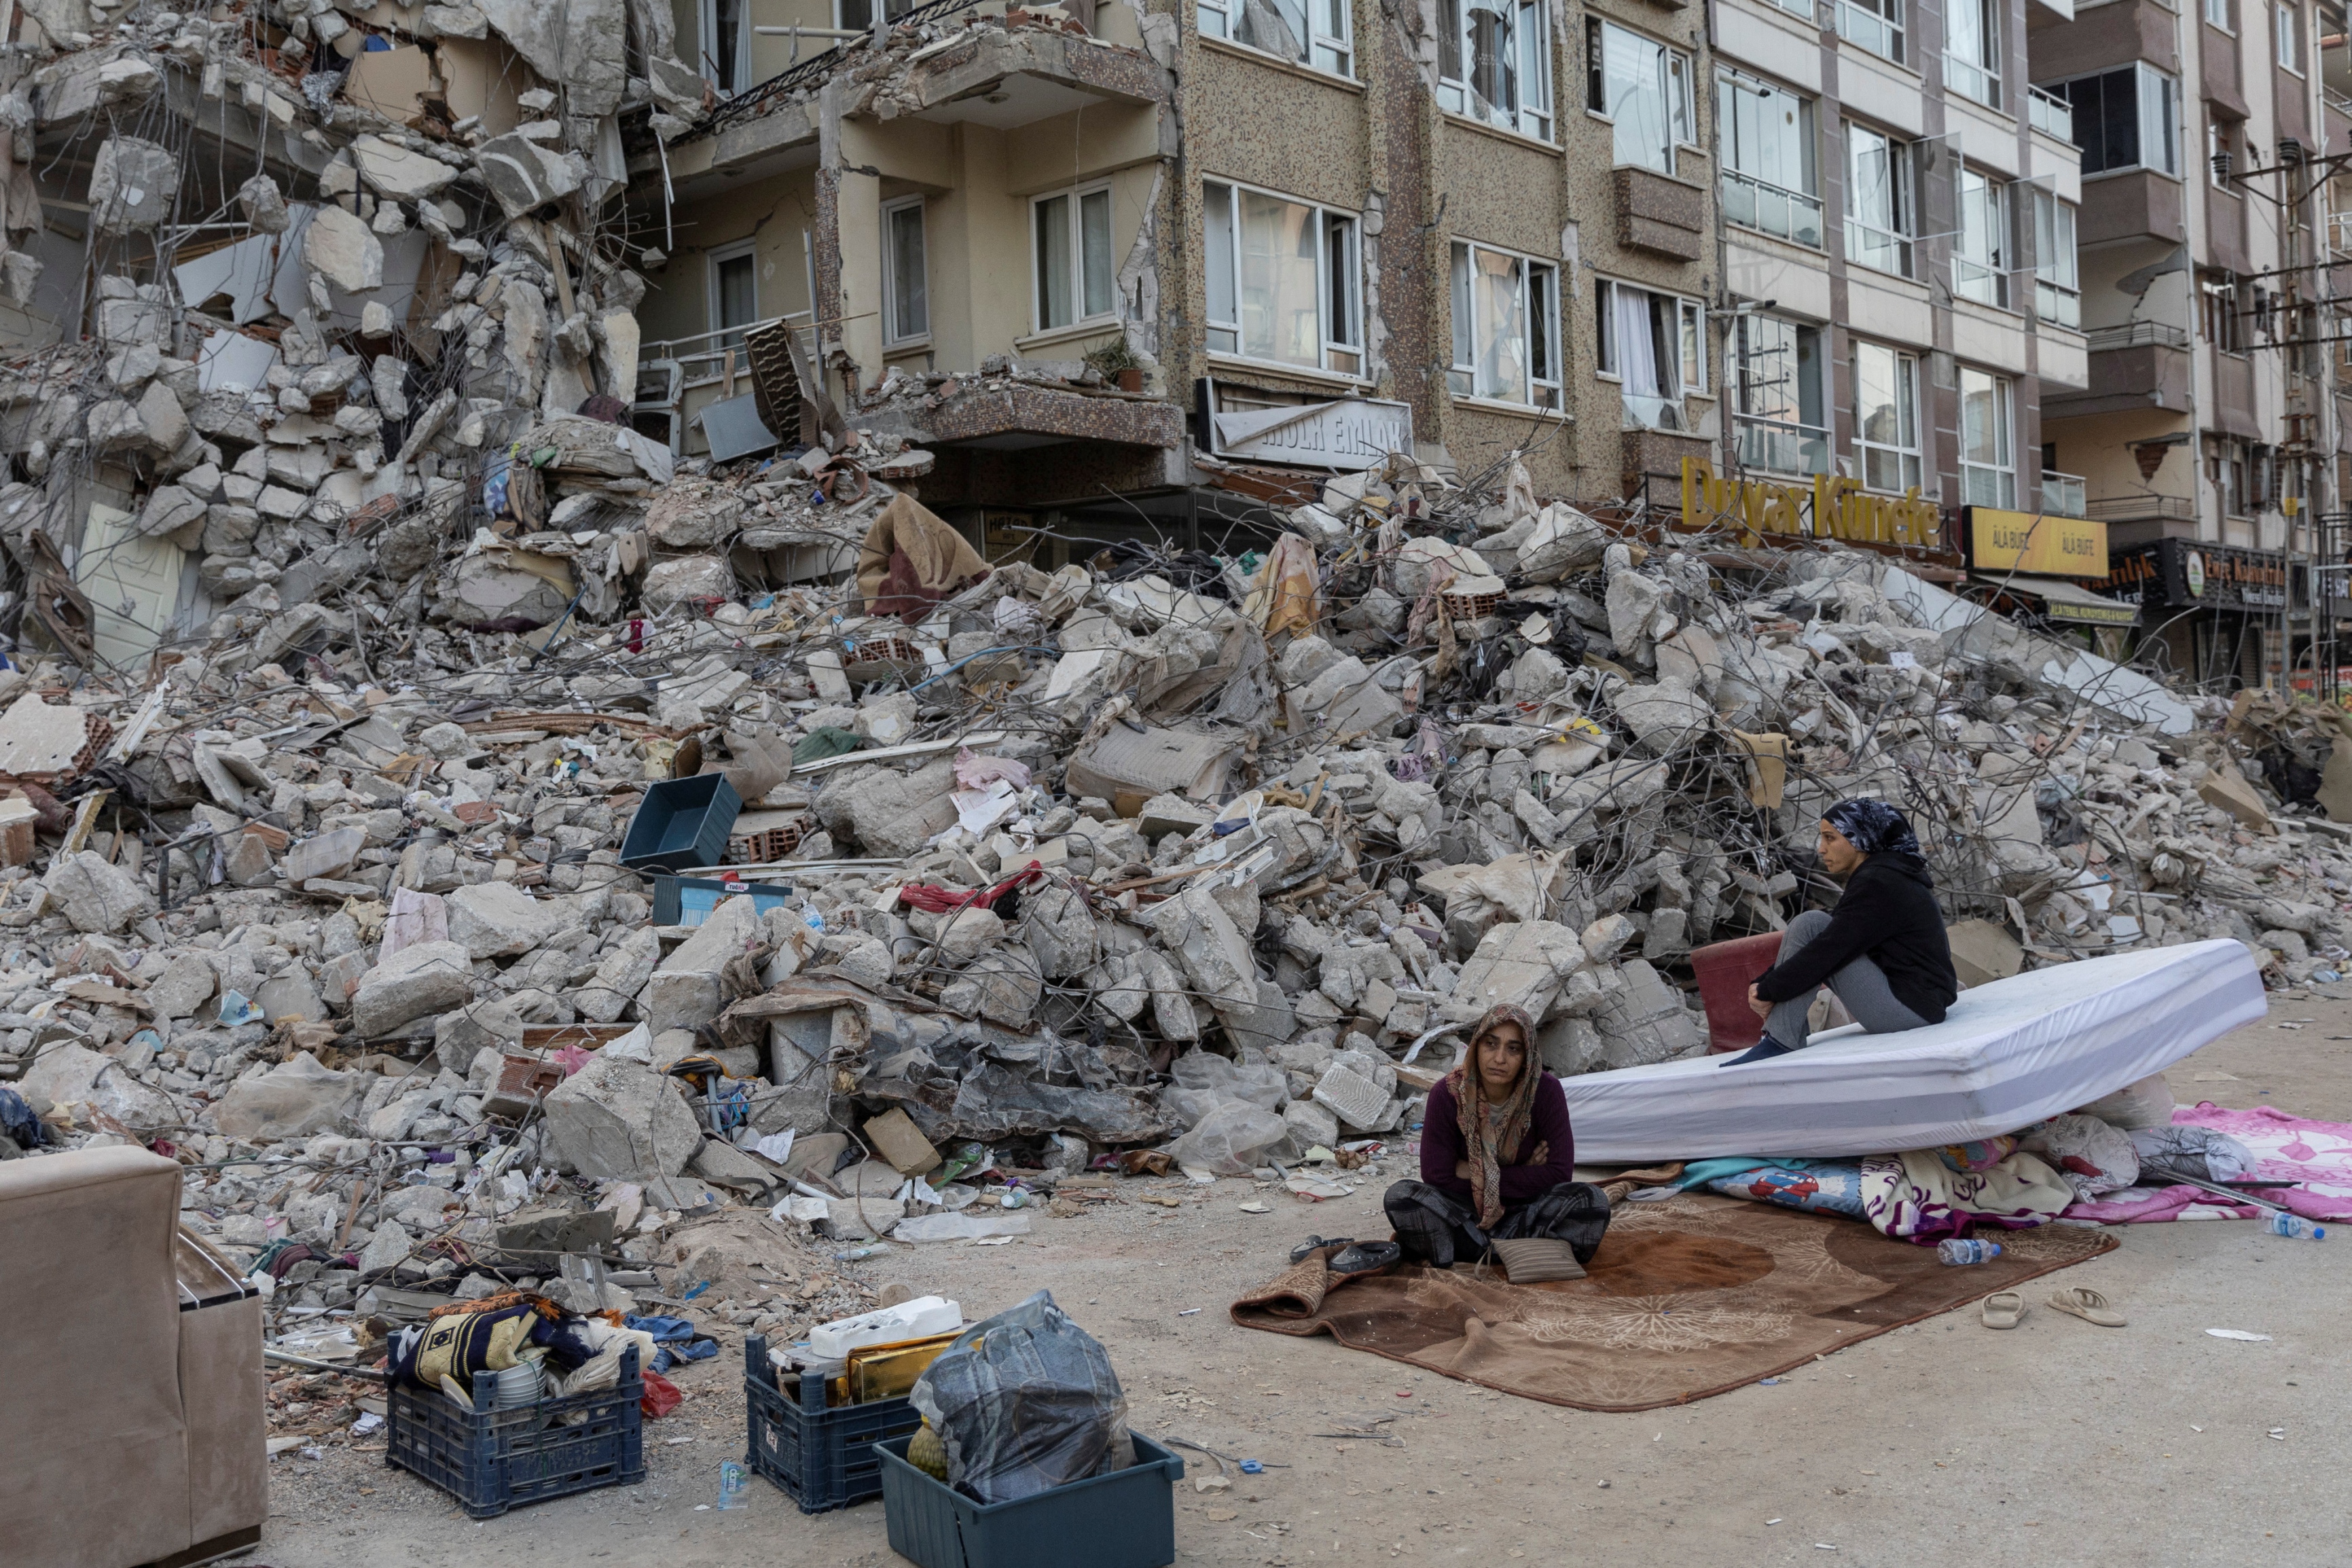 عدد قتلى الزلزال يتجاوز 50 ألفا في تركيا وسوريا